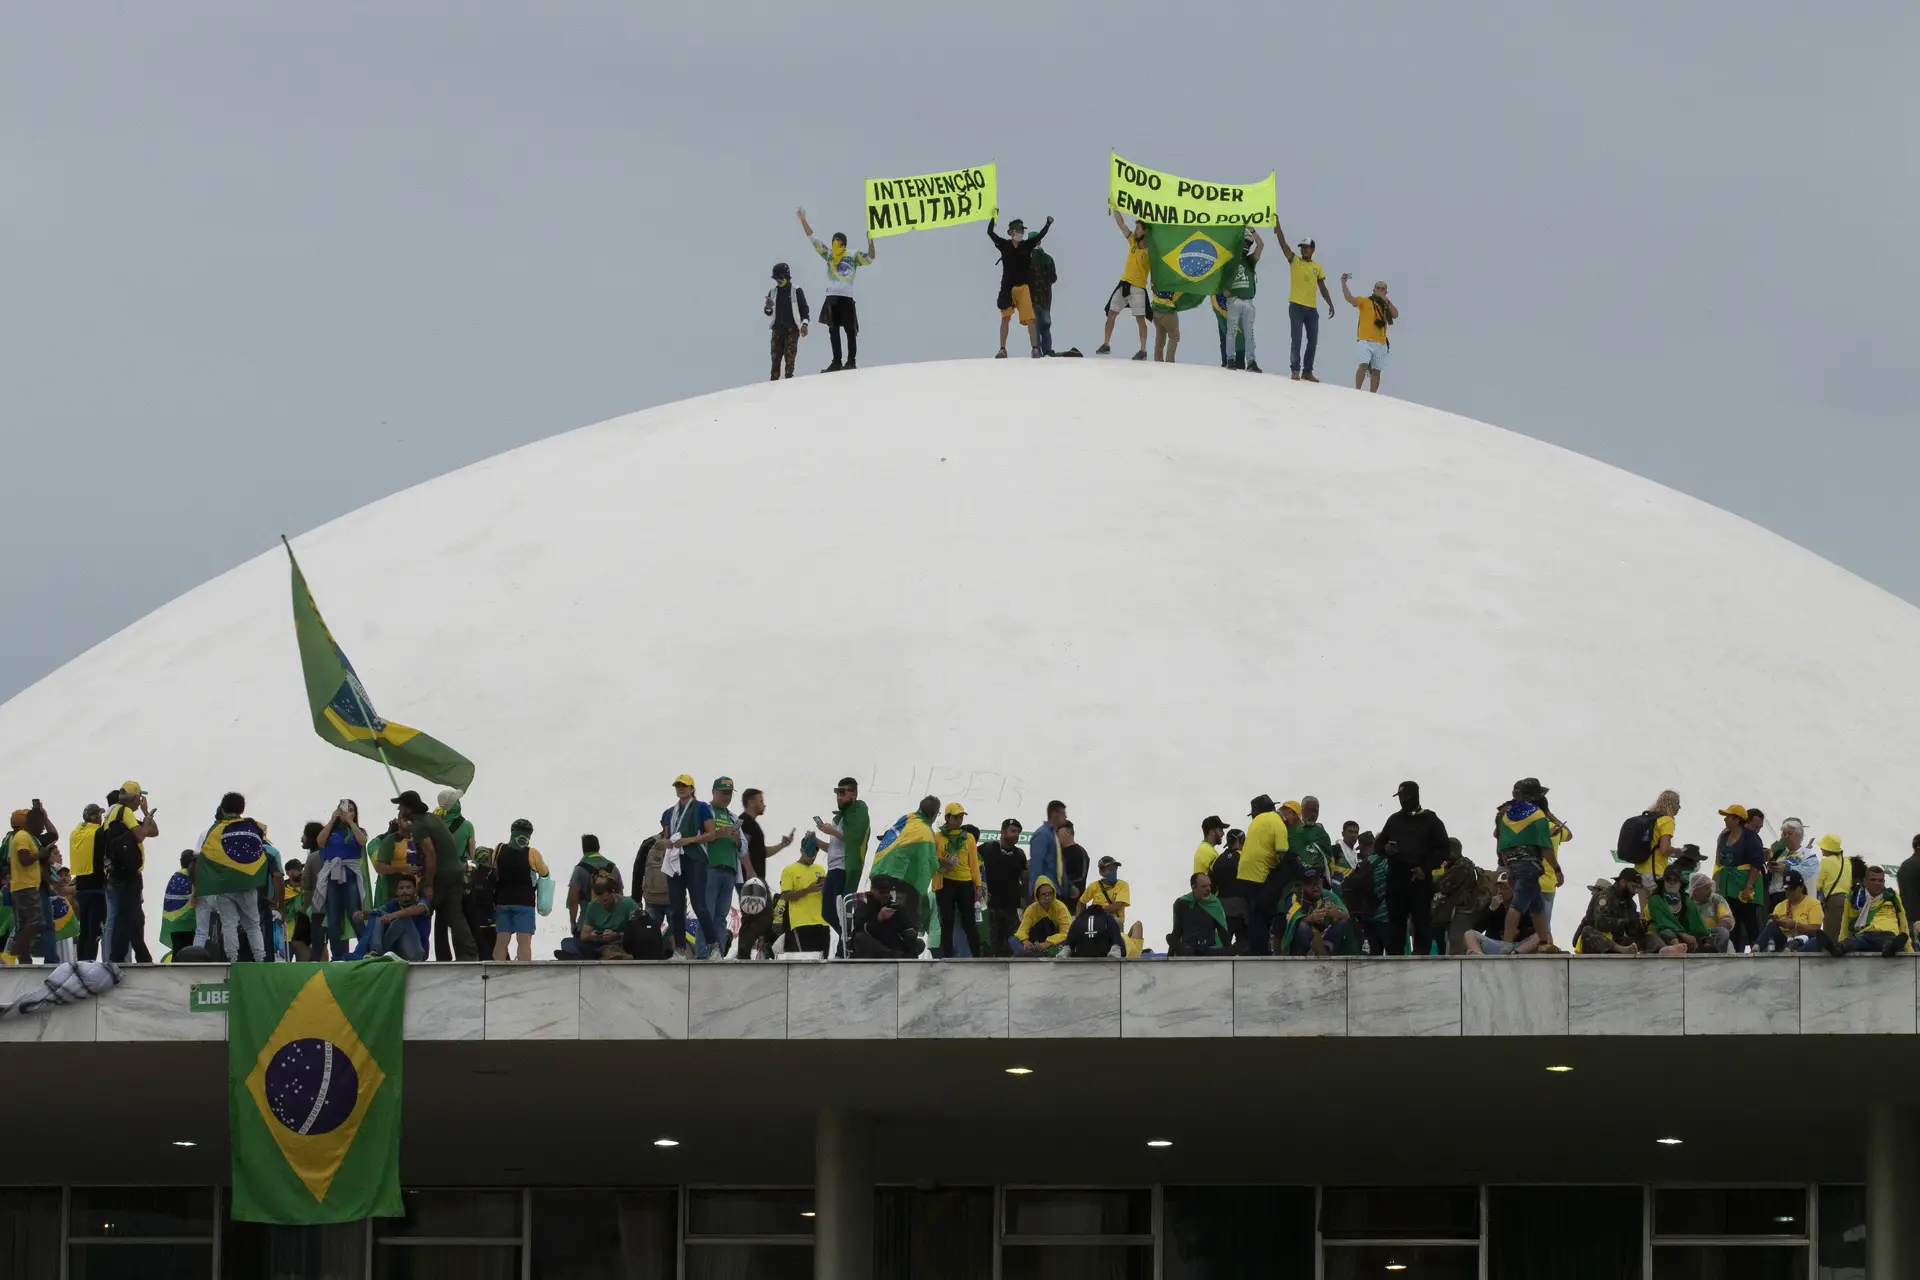 EXIGÊNCIA. Na cúpula do edifício do Congresso, pede-se uma “intervenção militar” para arredar Lula do poder